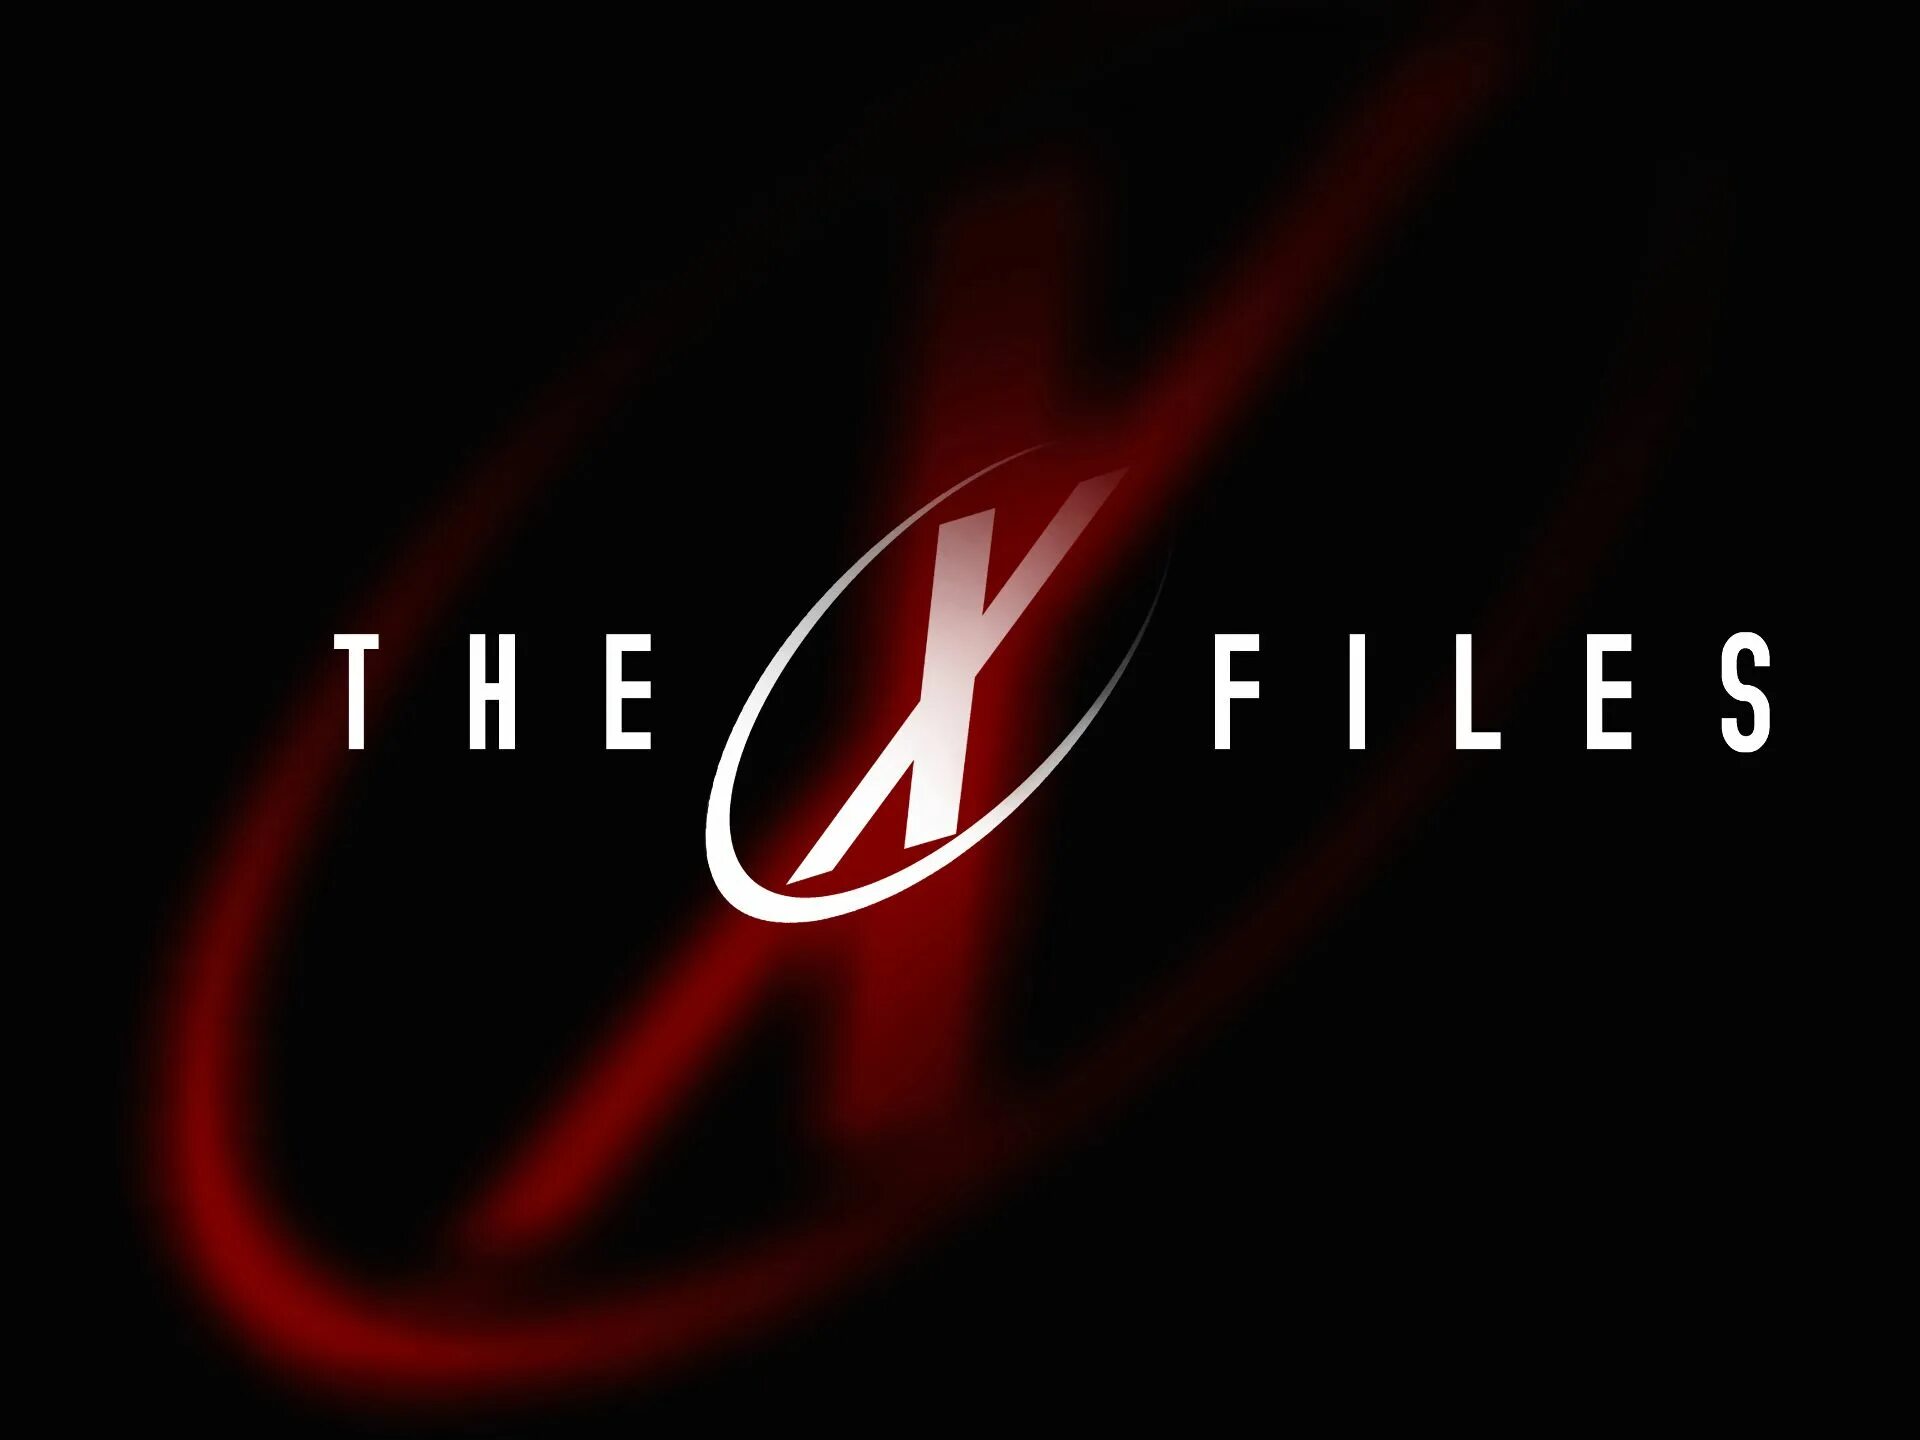 X files обои на рабочий стол. X files логотип. Секретные материалы заставка. Секретные файлы 2018